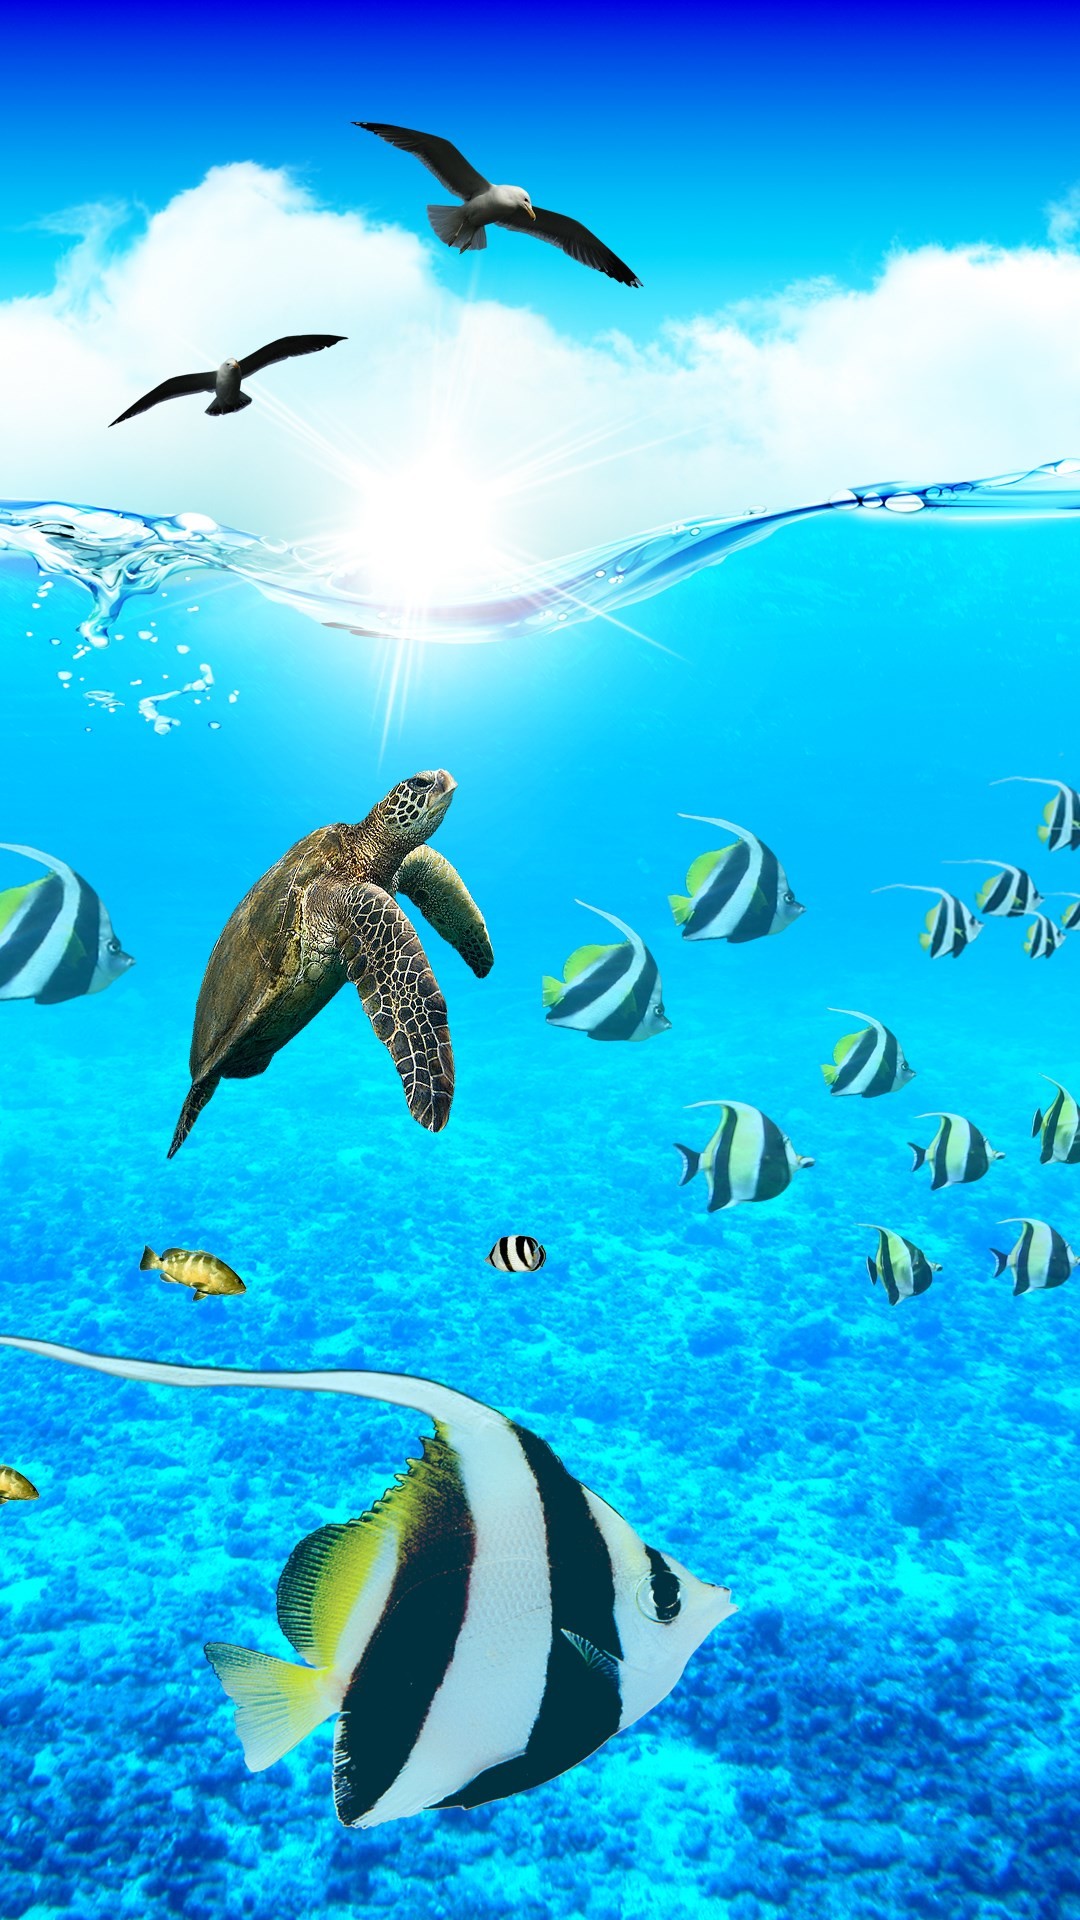 해양 생물 벽지,녹색 바다 거북,바다 거북,해양 생물학,터틀,올리브 리들리 바다 거북